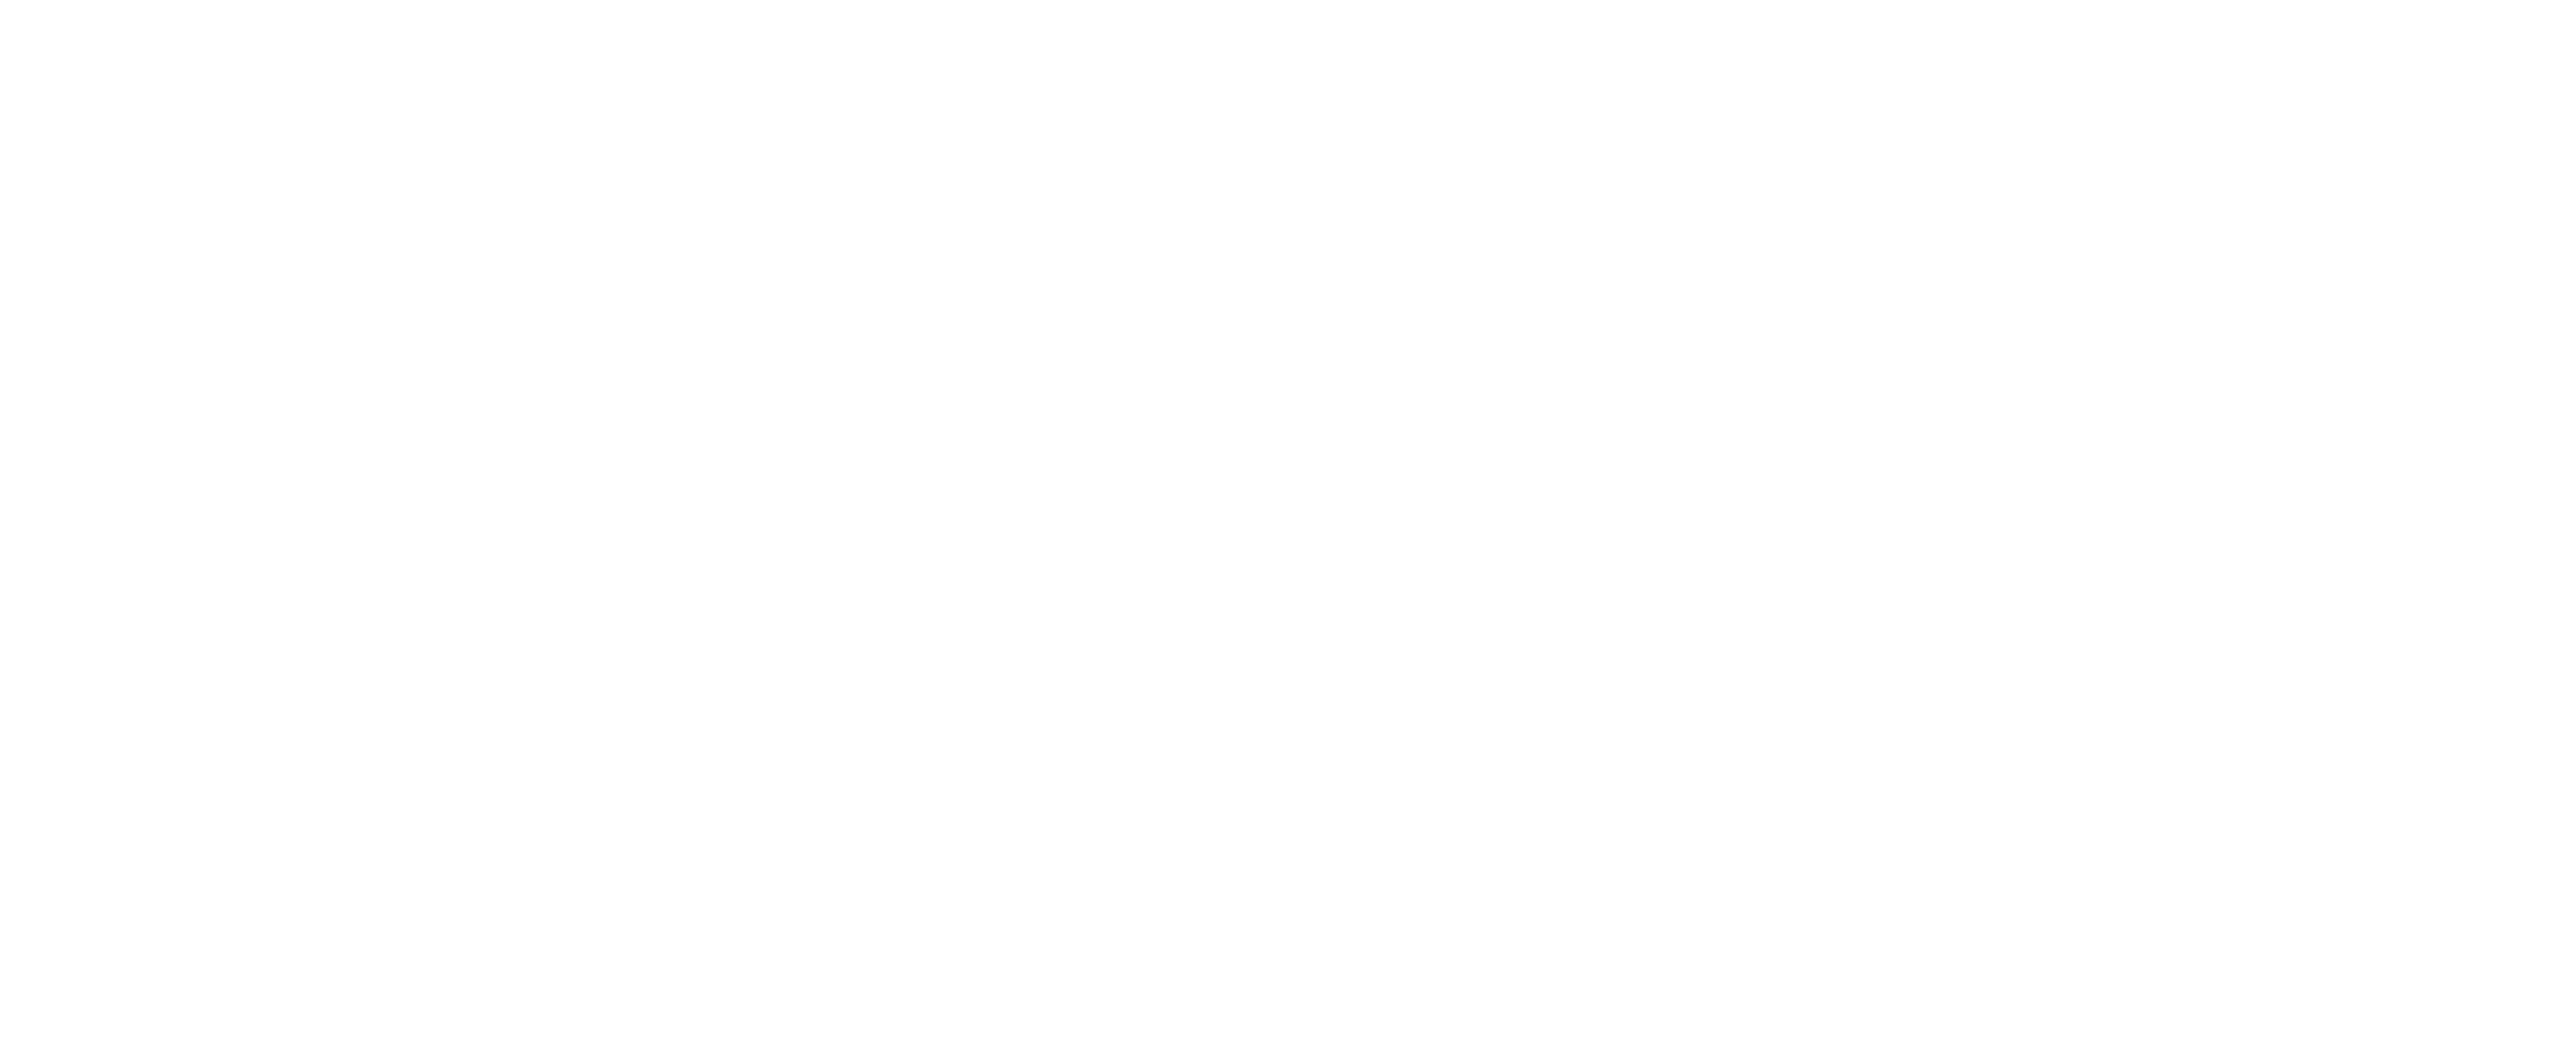 Logo Pros